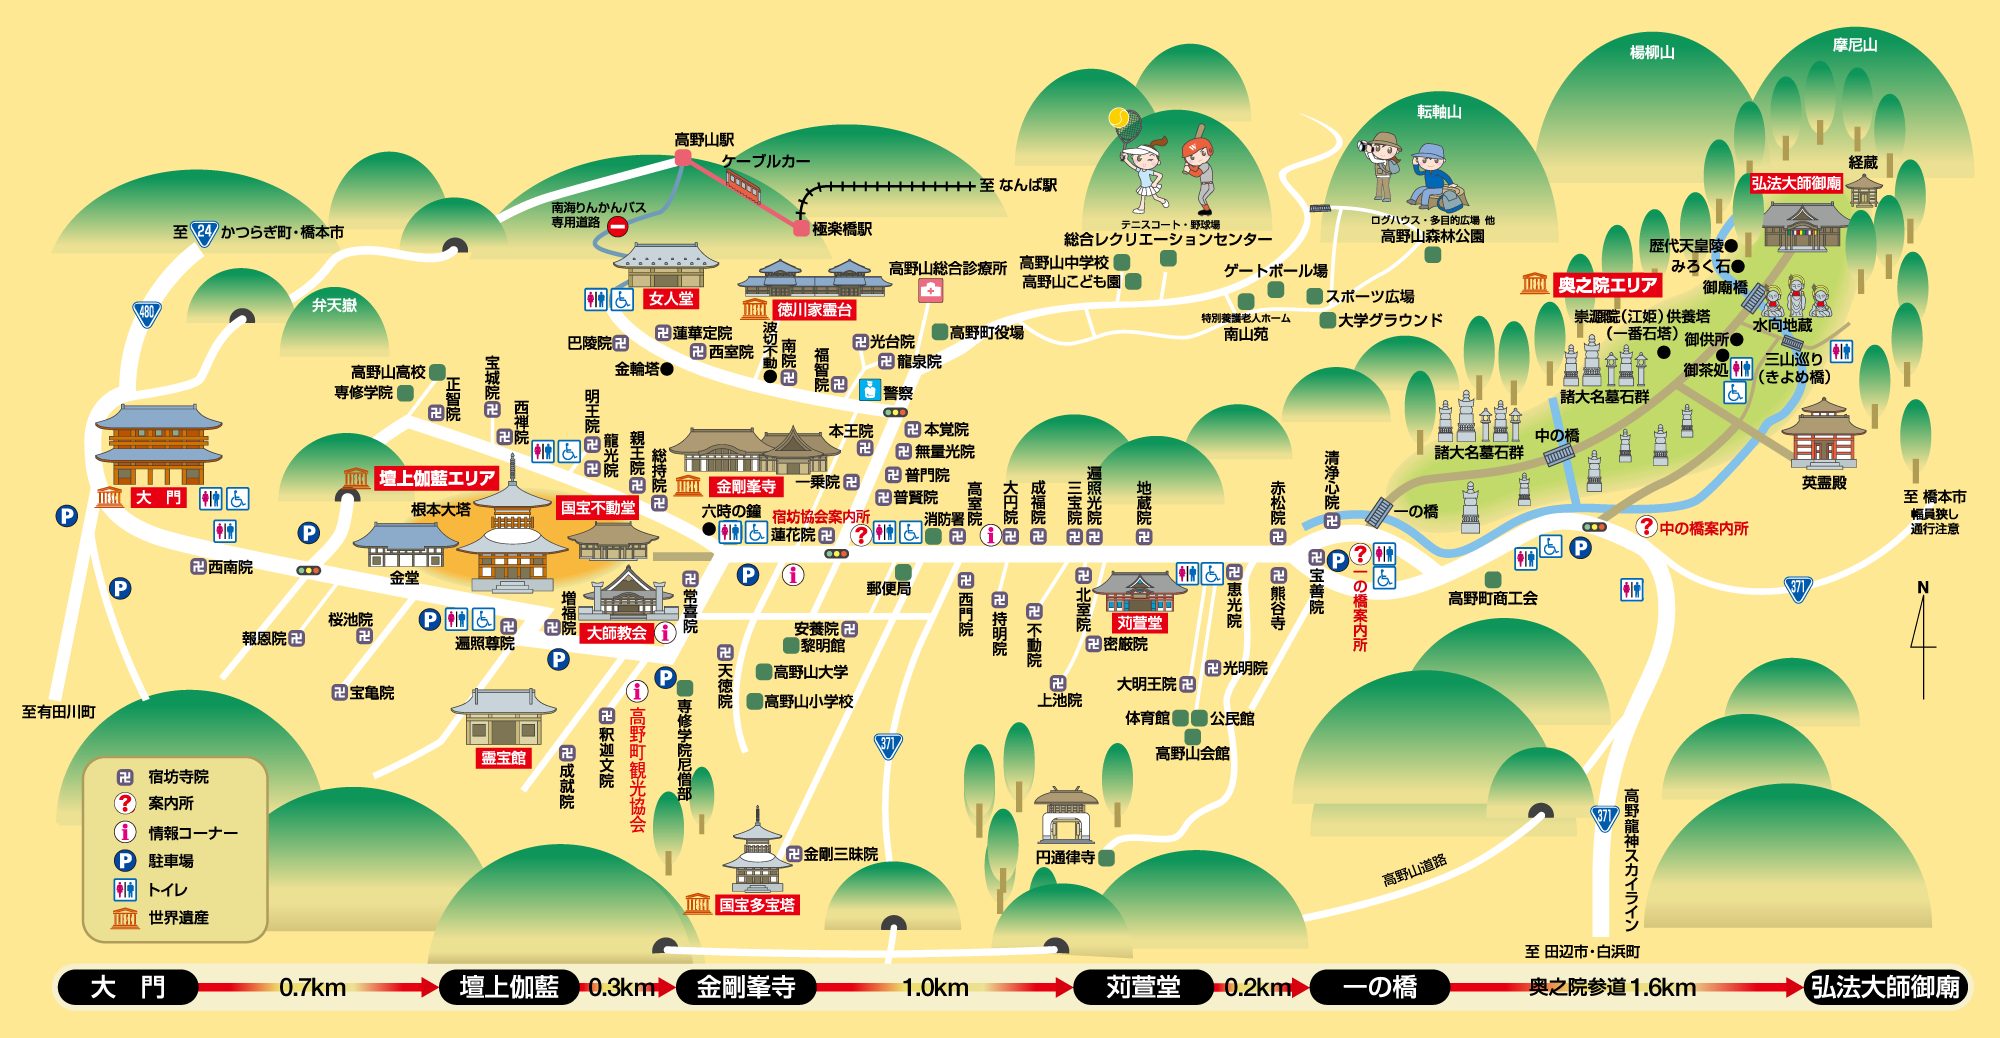 難波駅から 高野山へのアクセス おすすめの行き方を紹介します 関西のお勧めスポットのアクセス方法と楽しみ方